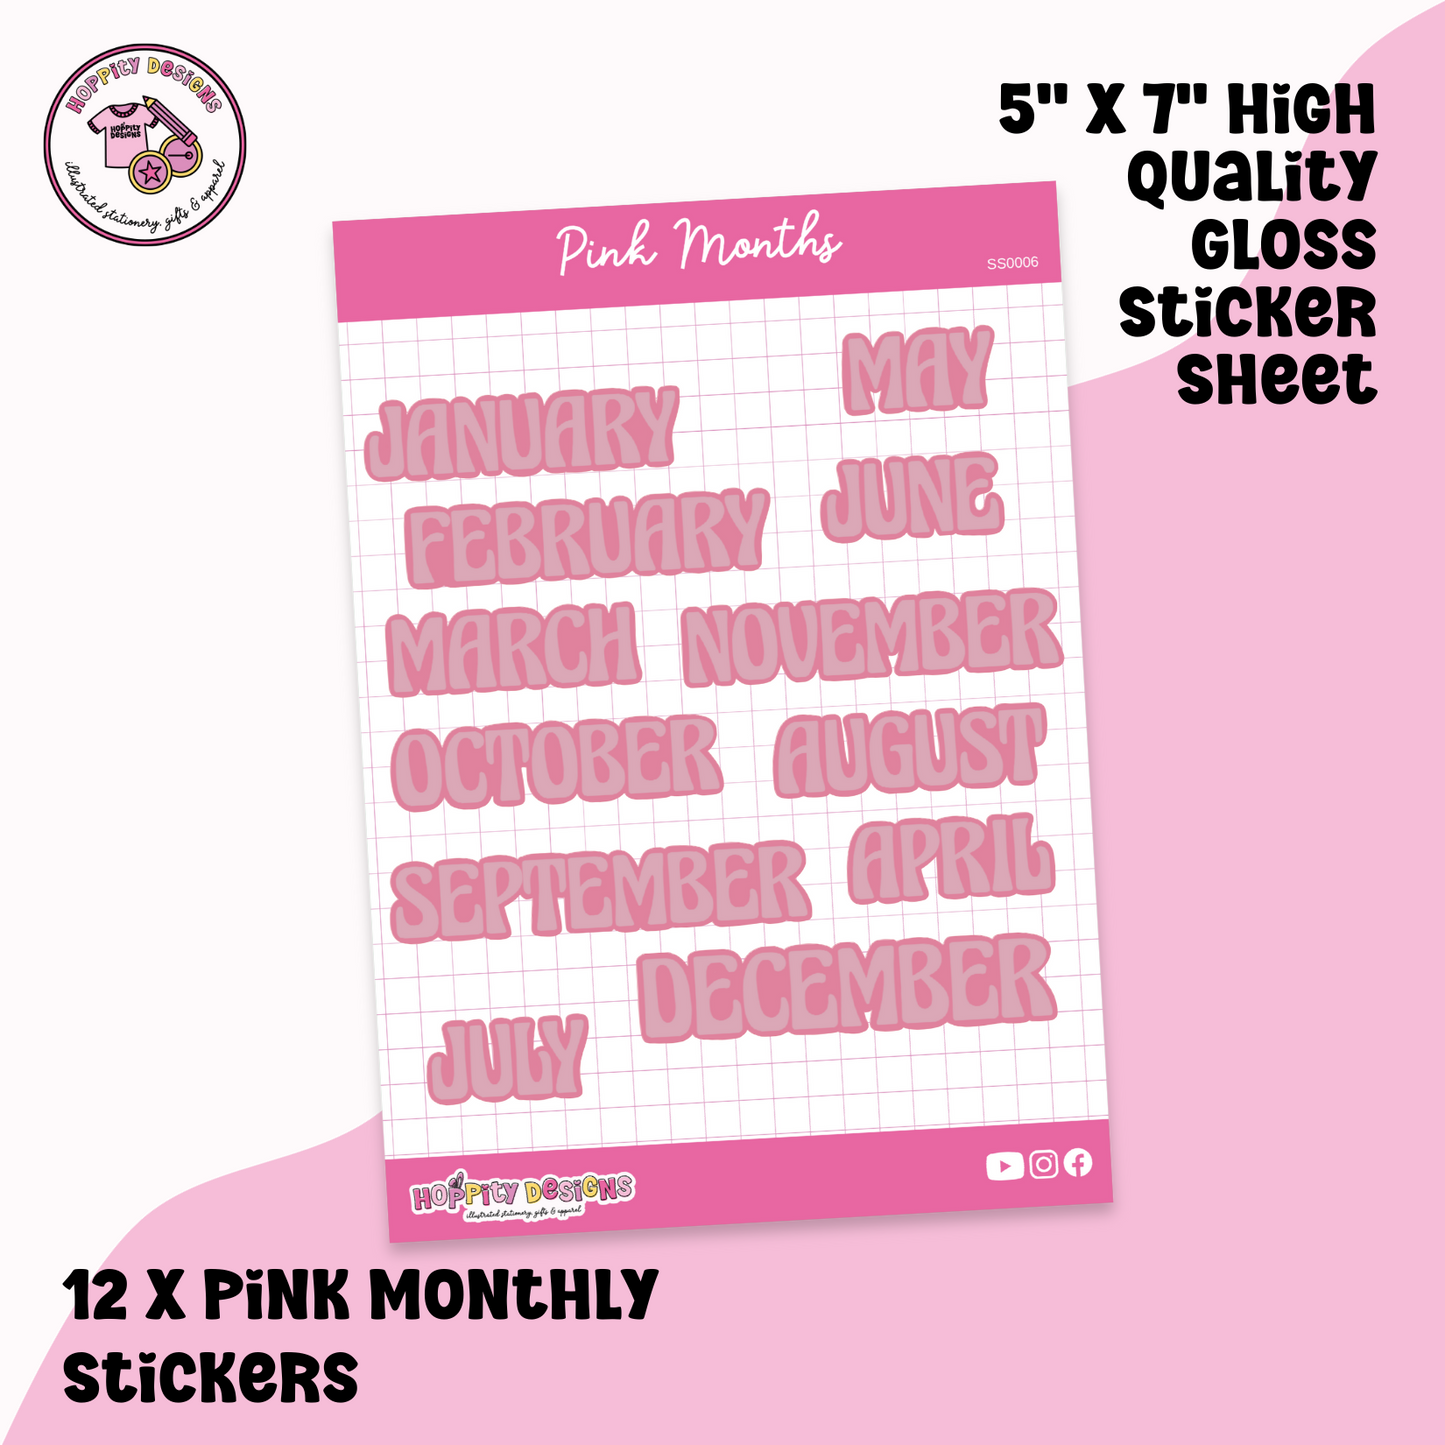 Pink Months Planner Sticker Sheet - SS0006